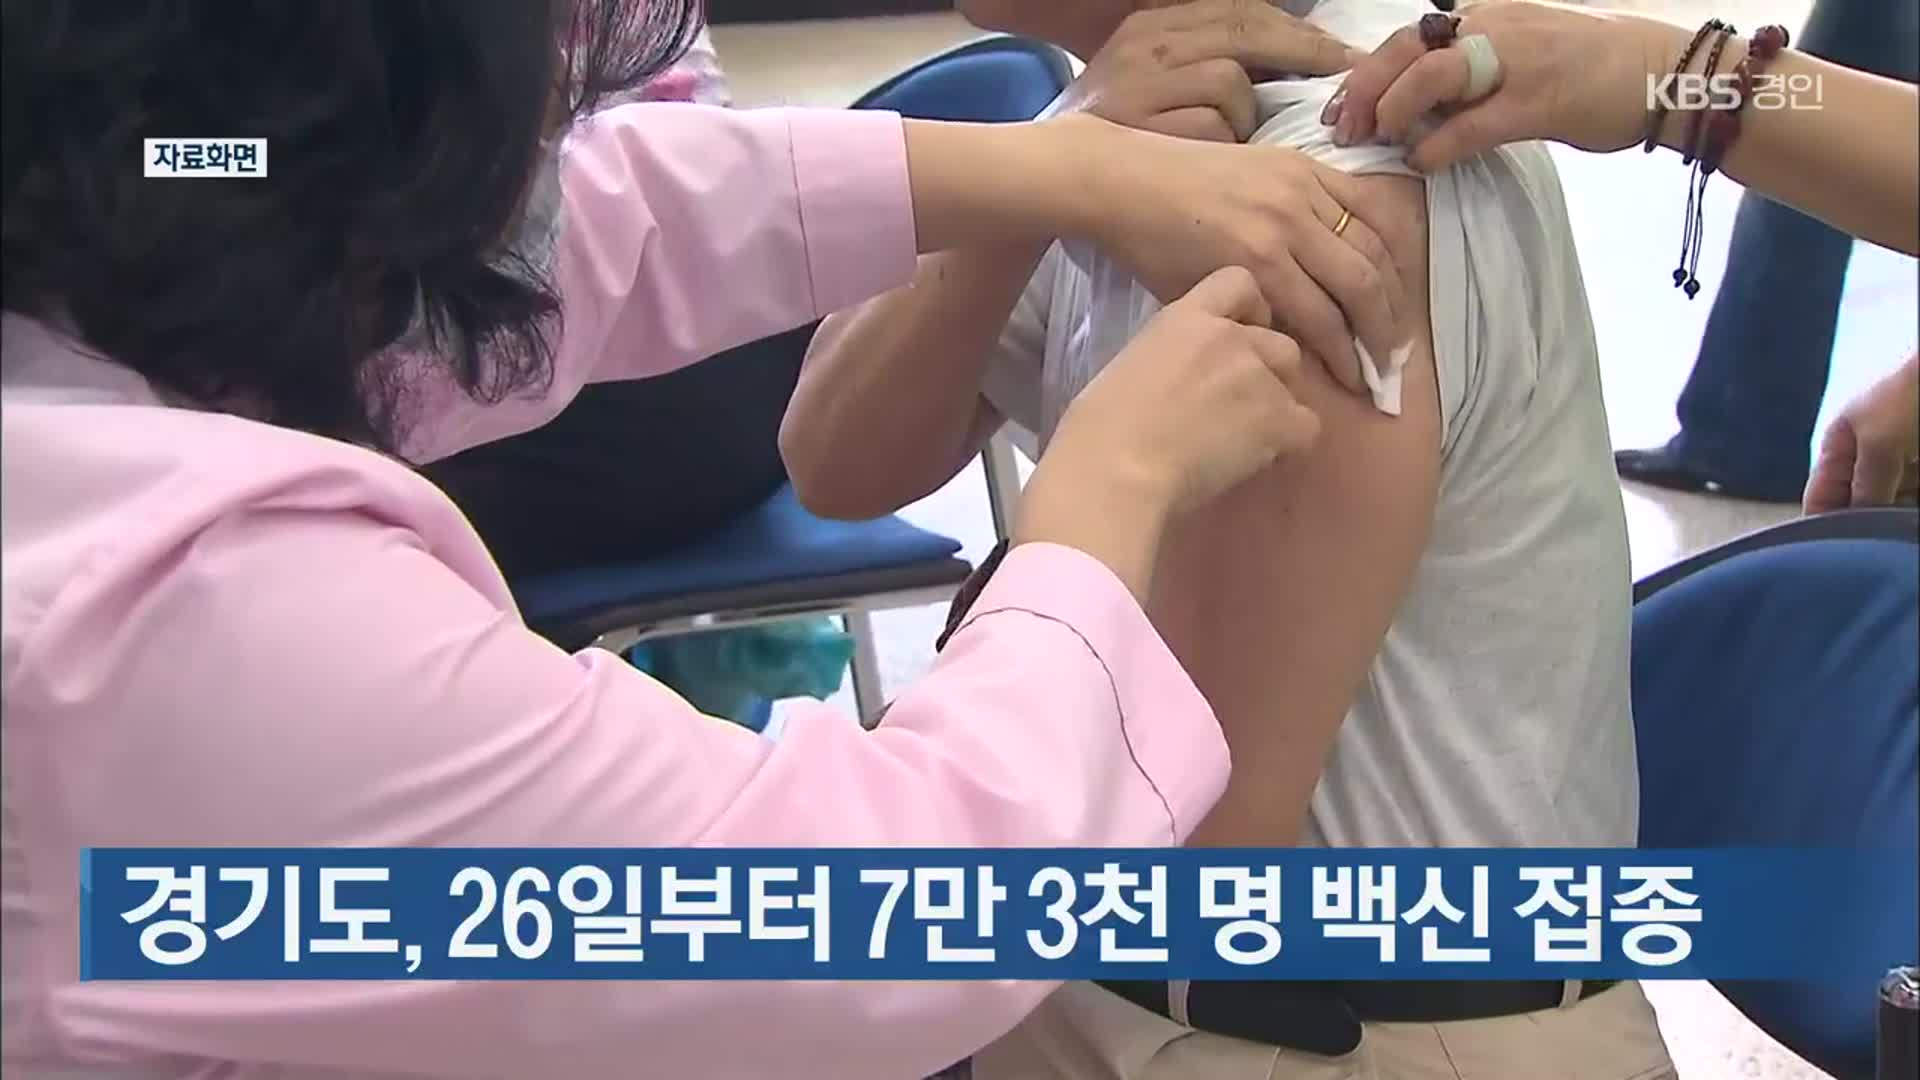 경기도, 26일부터 7만 3천 명 백신 접종